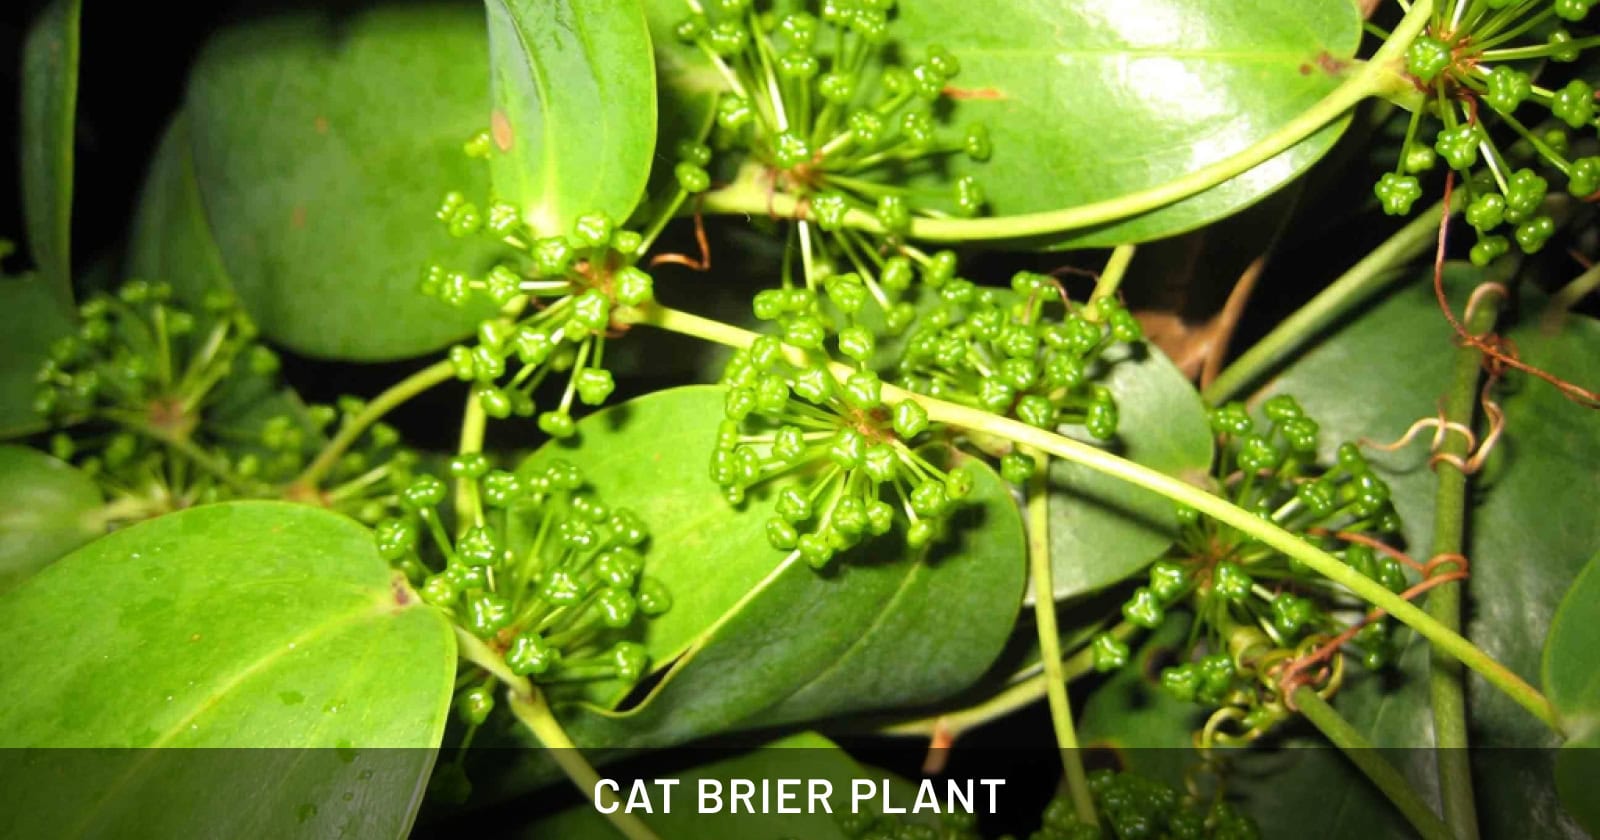 CAT BRIER PLANT